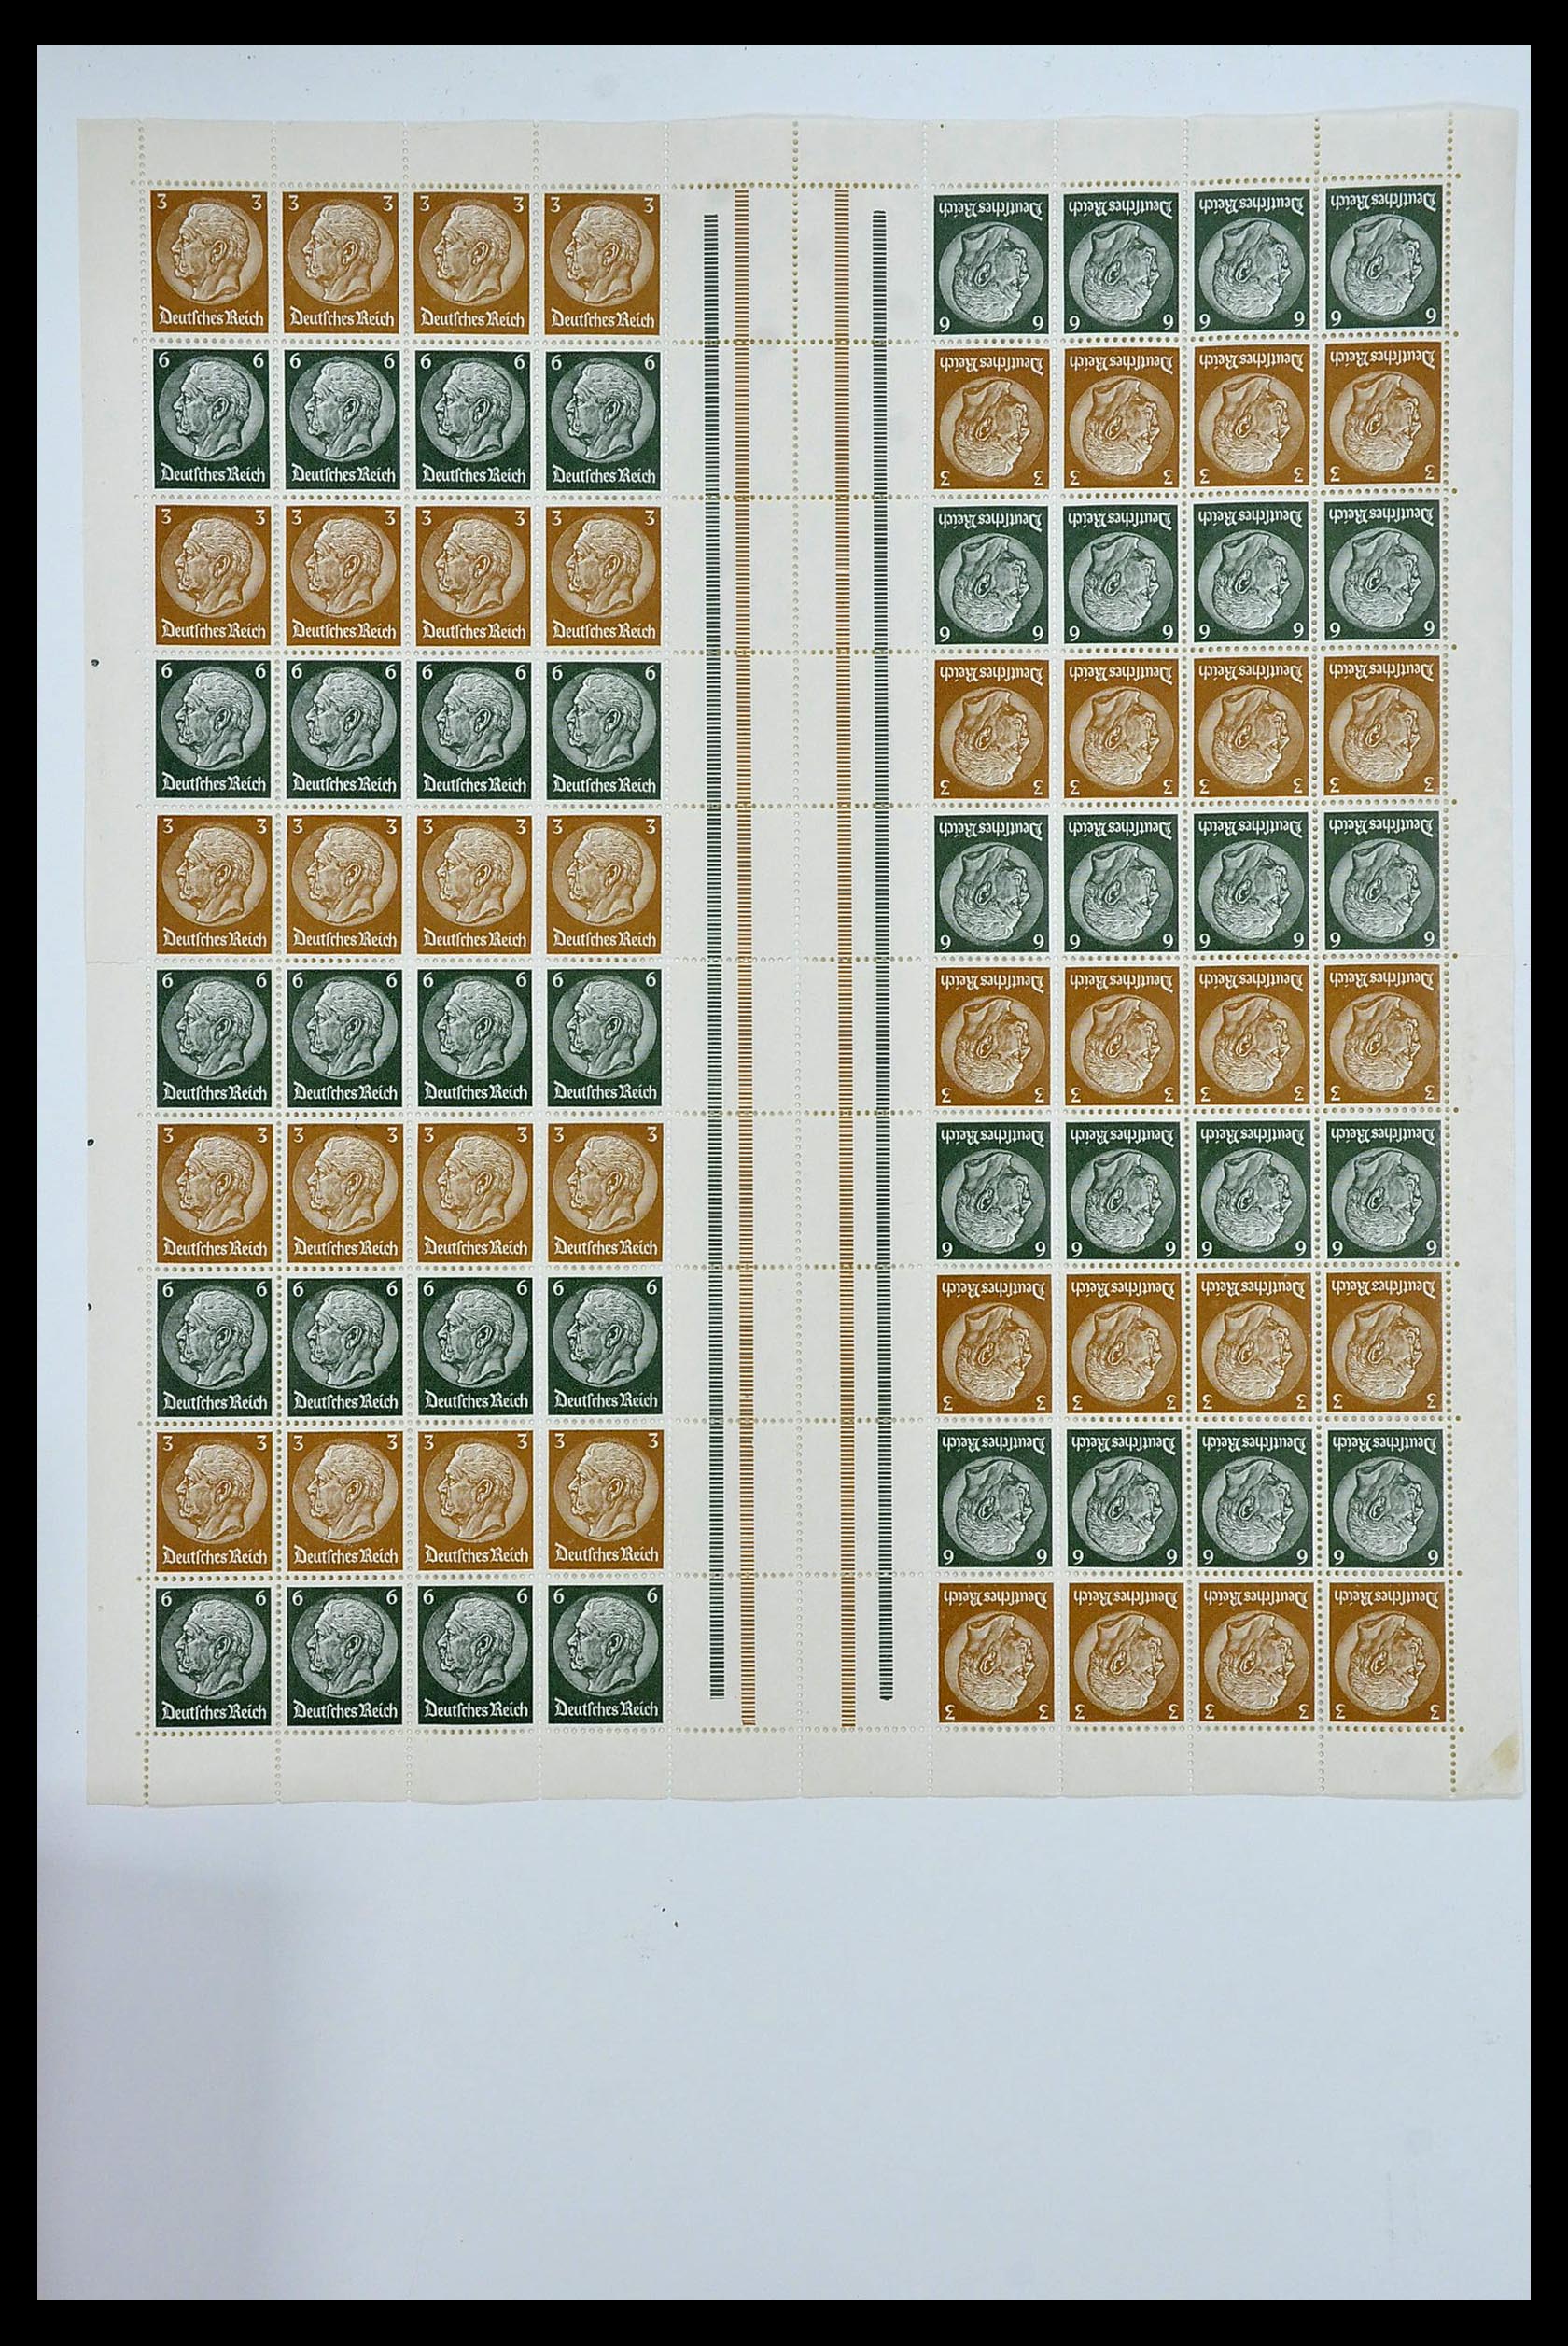 34164 025 - Stamp collection 34164 German Reich Markenheftchenbogen 1933-1942.